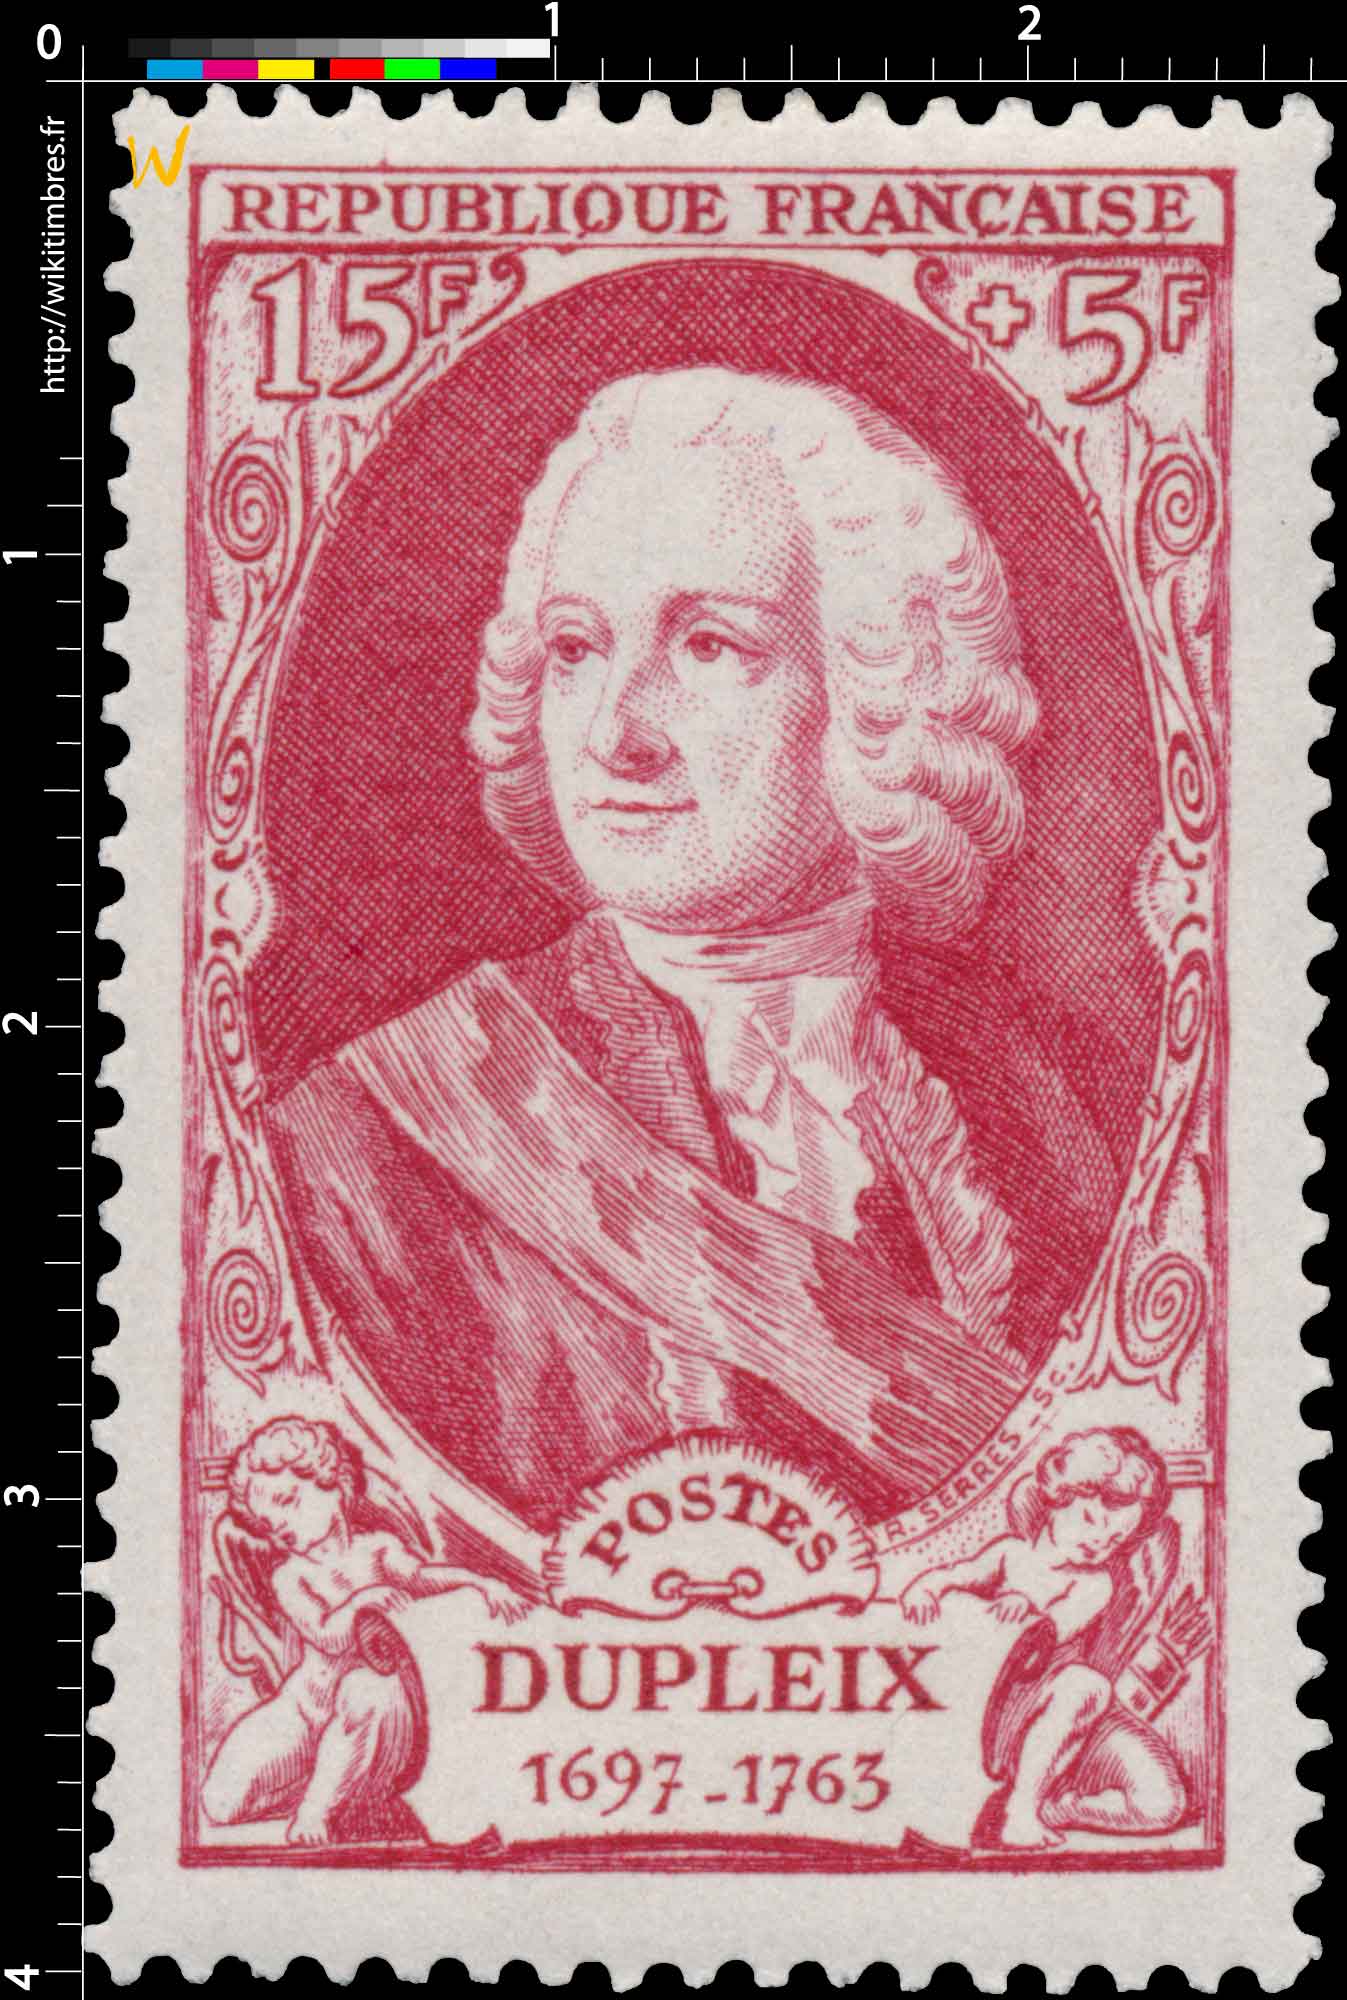 DUPLEIX 1697-1763